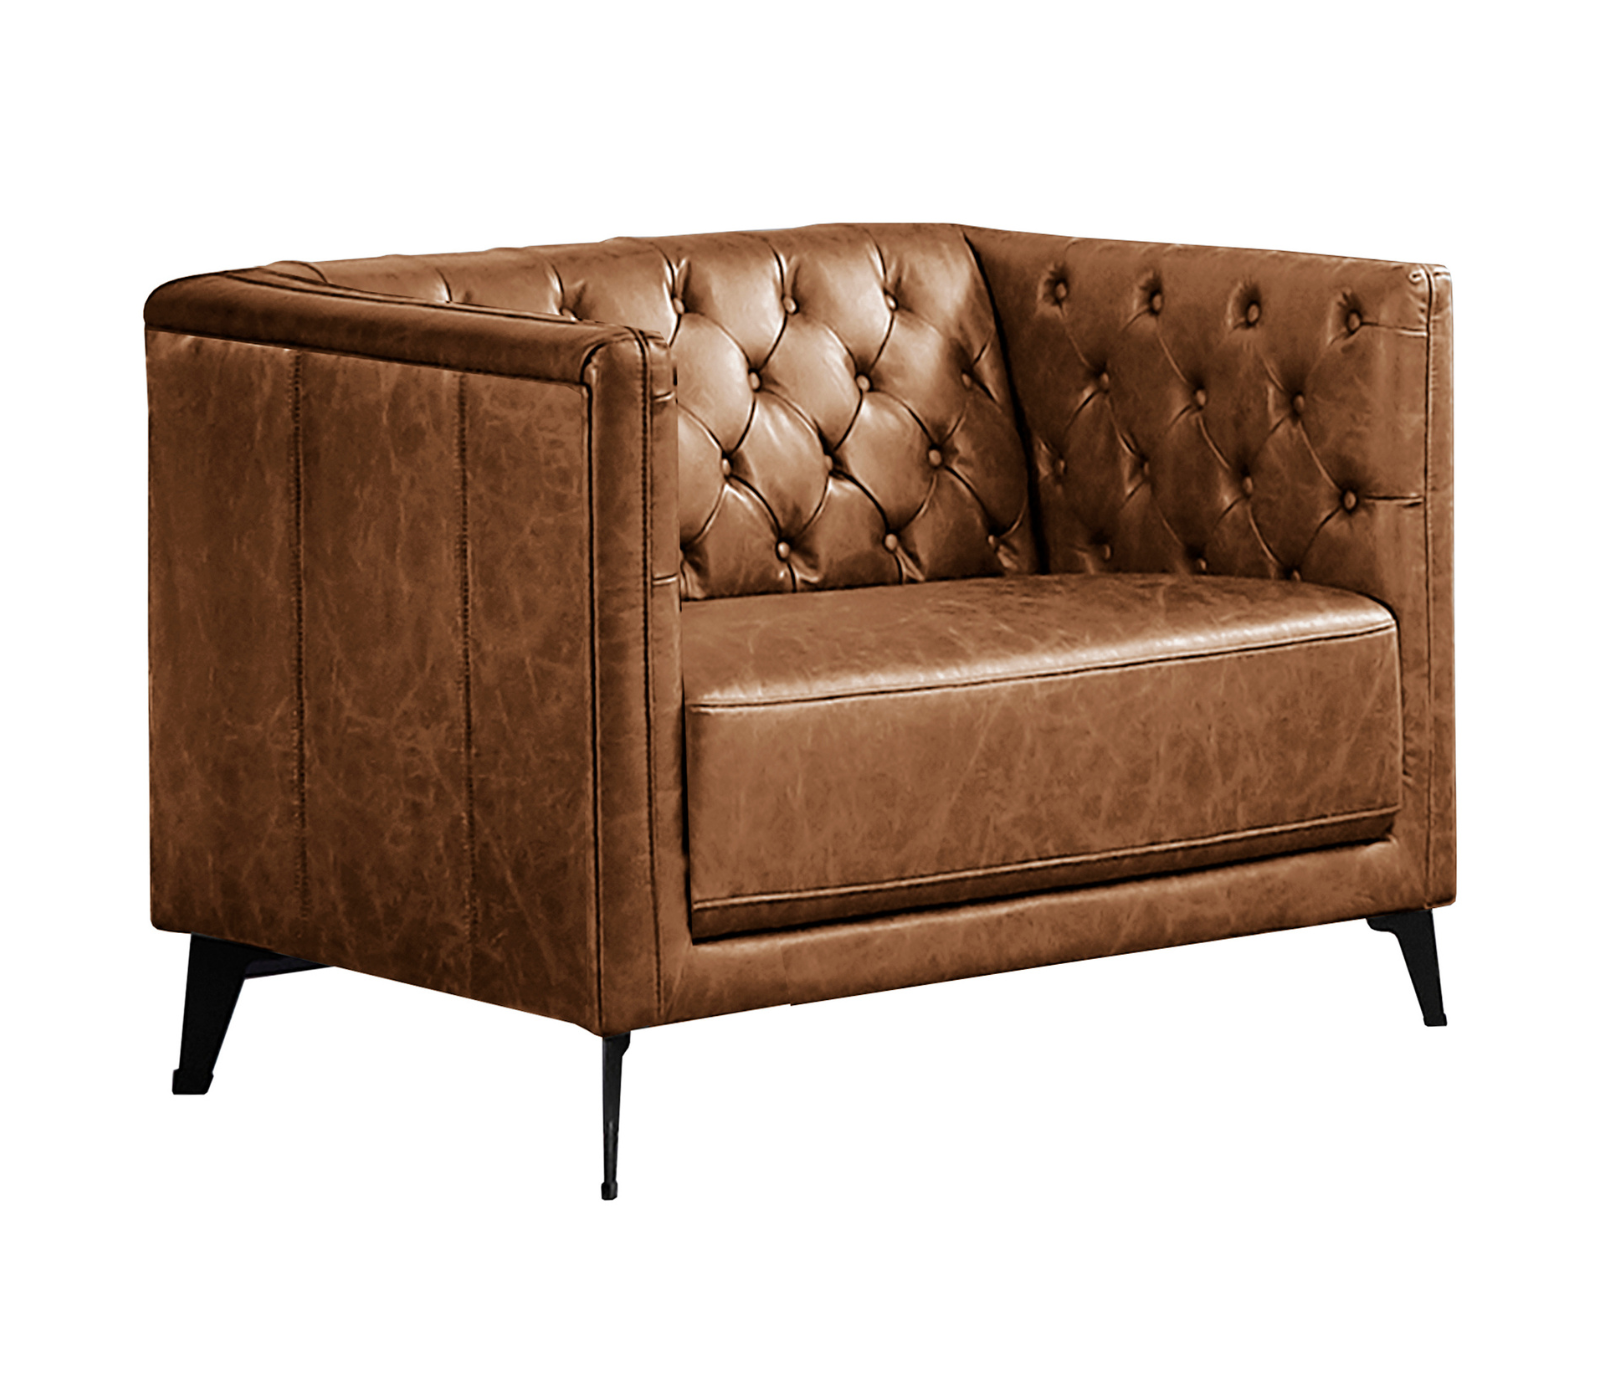 Ashton Chair - Cognac Fabric